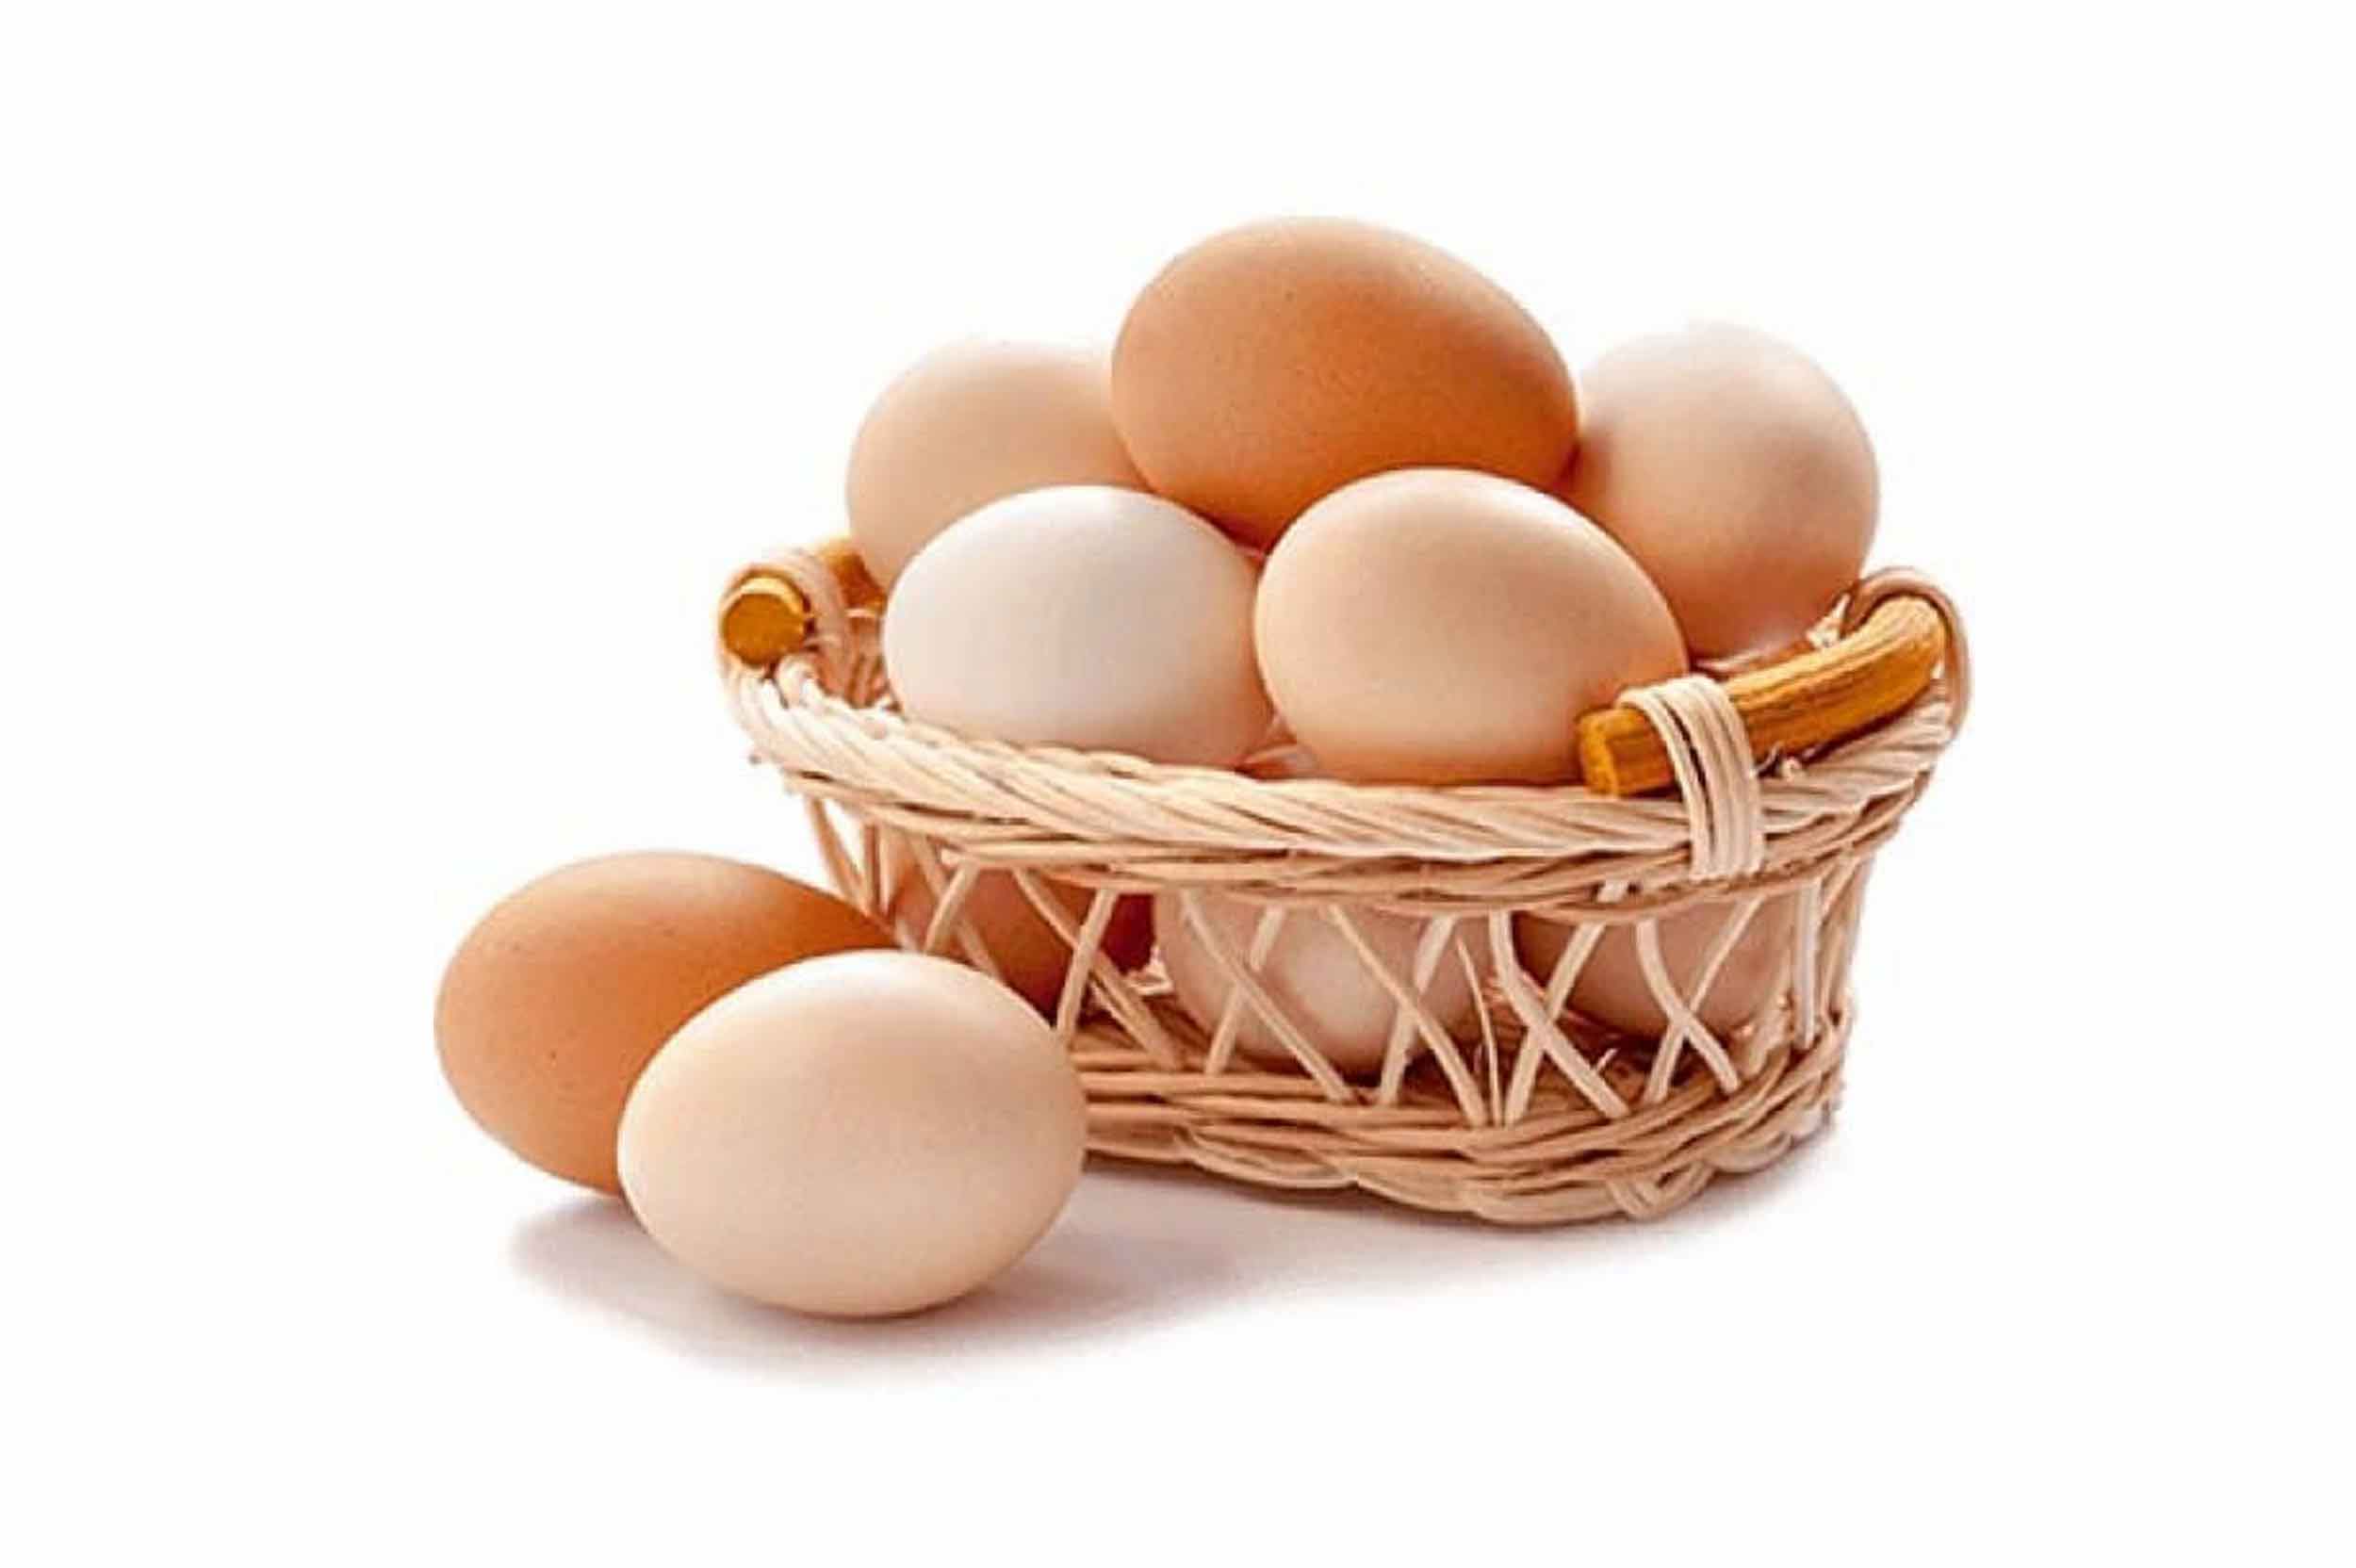 أسعار البيض الأحمر ترتفع بالسوق المحلية اليوم